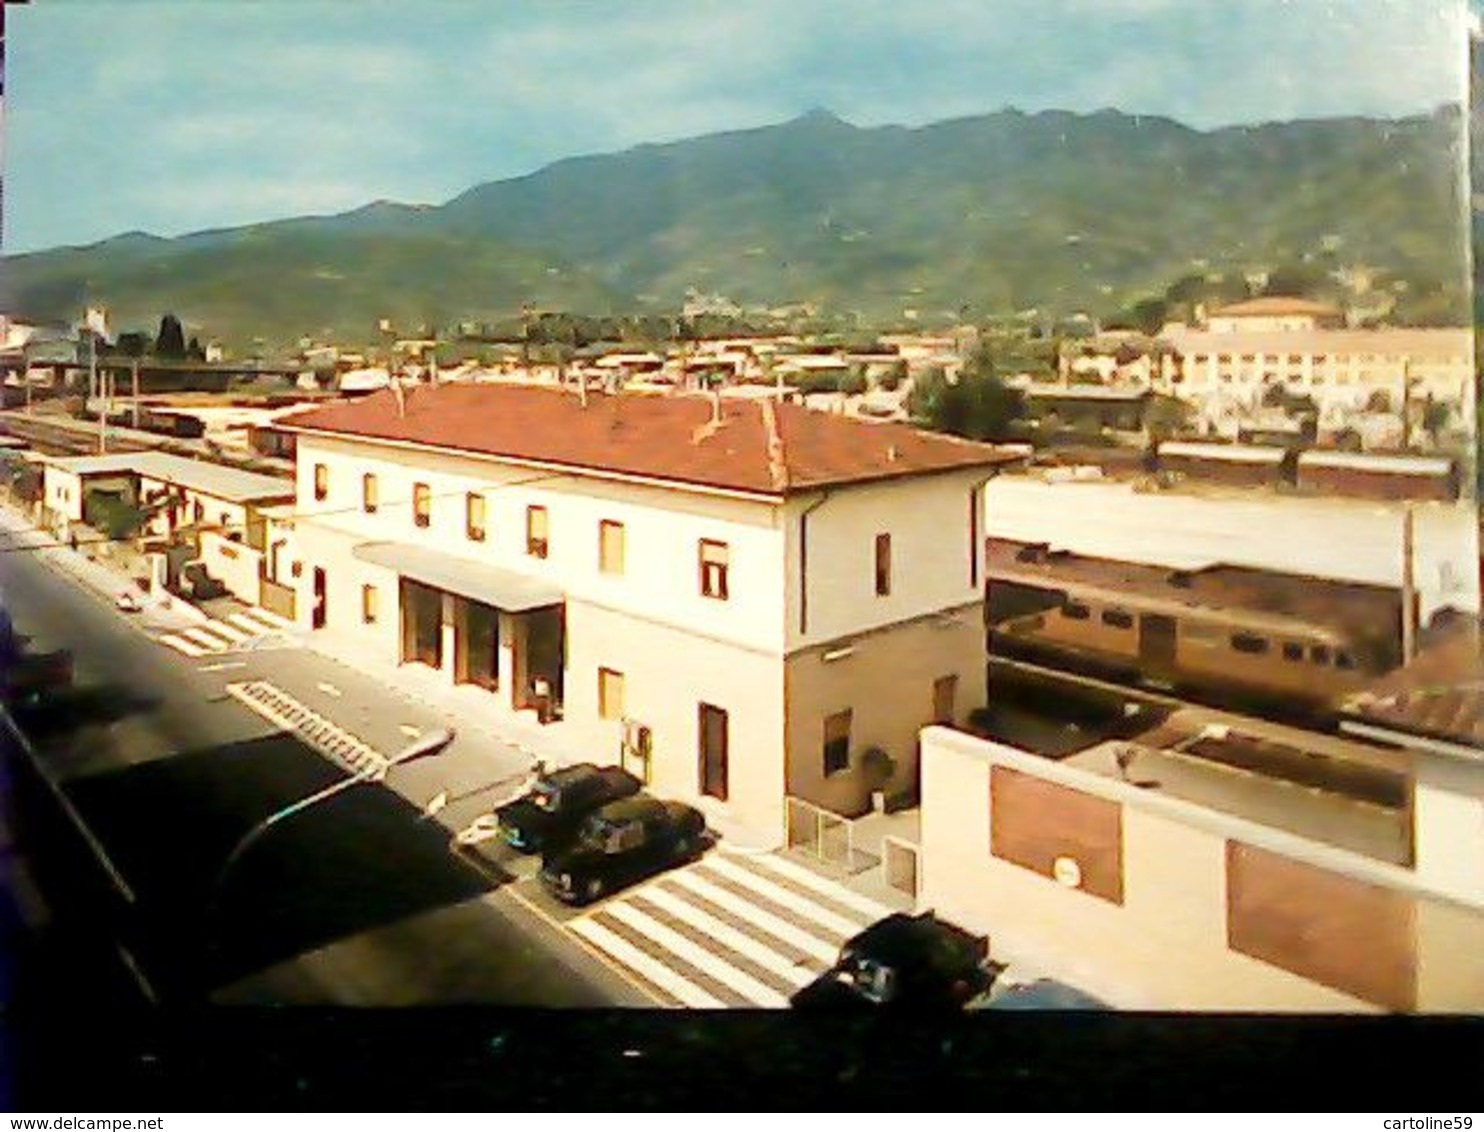 LUCCA  Stazione Di Stazione Forte Dei Marmi-Seravezza-Querceta Treni TRAIN Railroad Trein Railways  N1970  HR10201 - Lucca